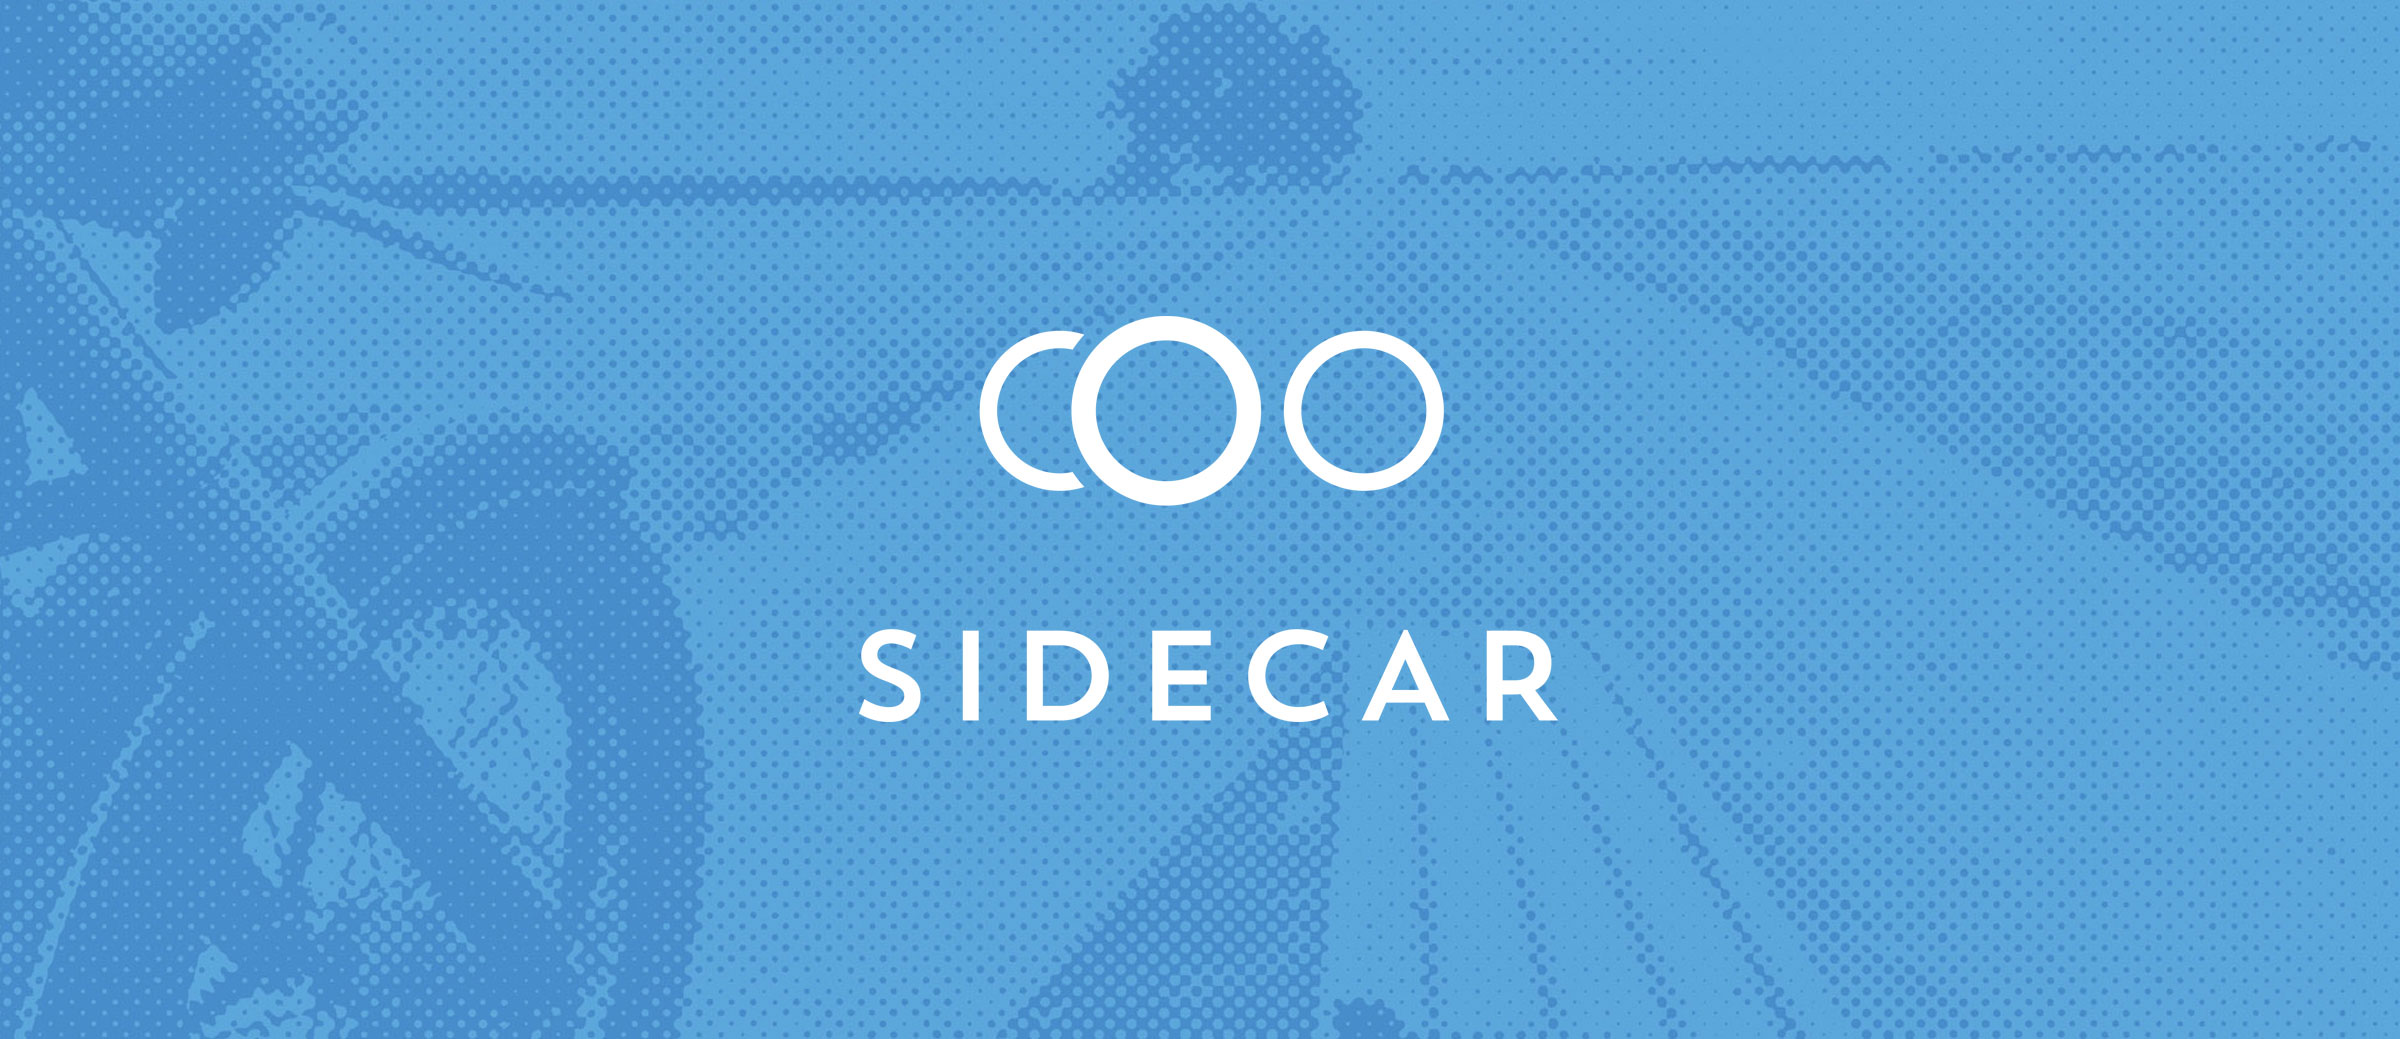 sidecar-banner